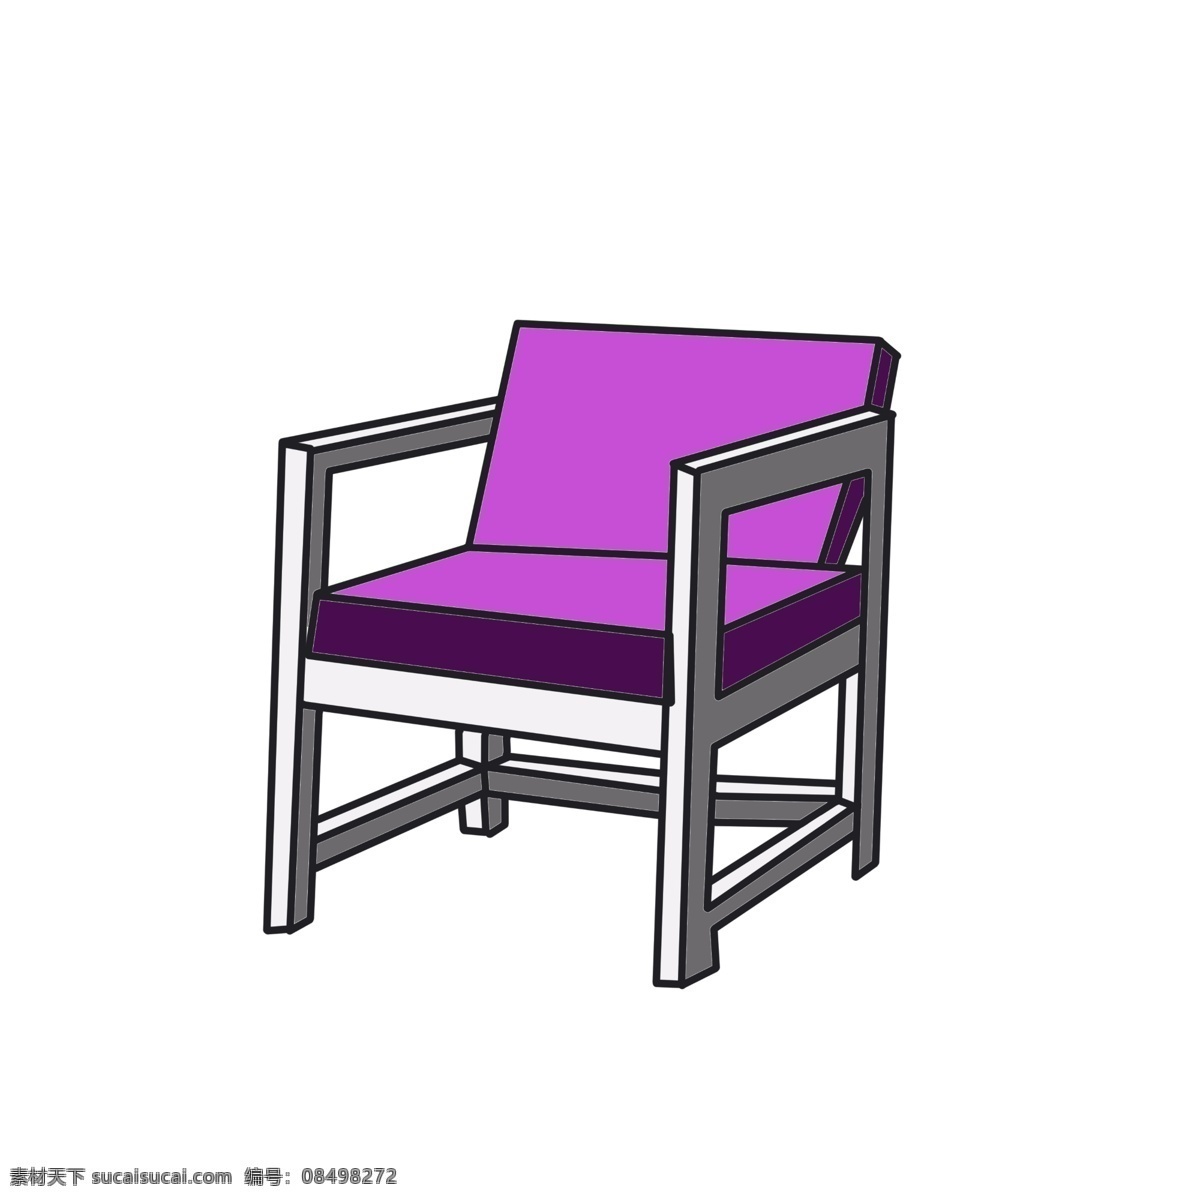 木质 椅子 装饰 插画 木质椅子 紫色的椅子 漂亮的椅子 创意椅子 立体椅子 精美椅子 家具椅子